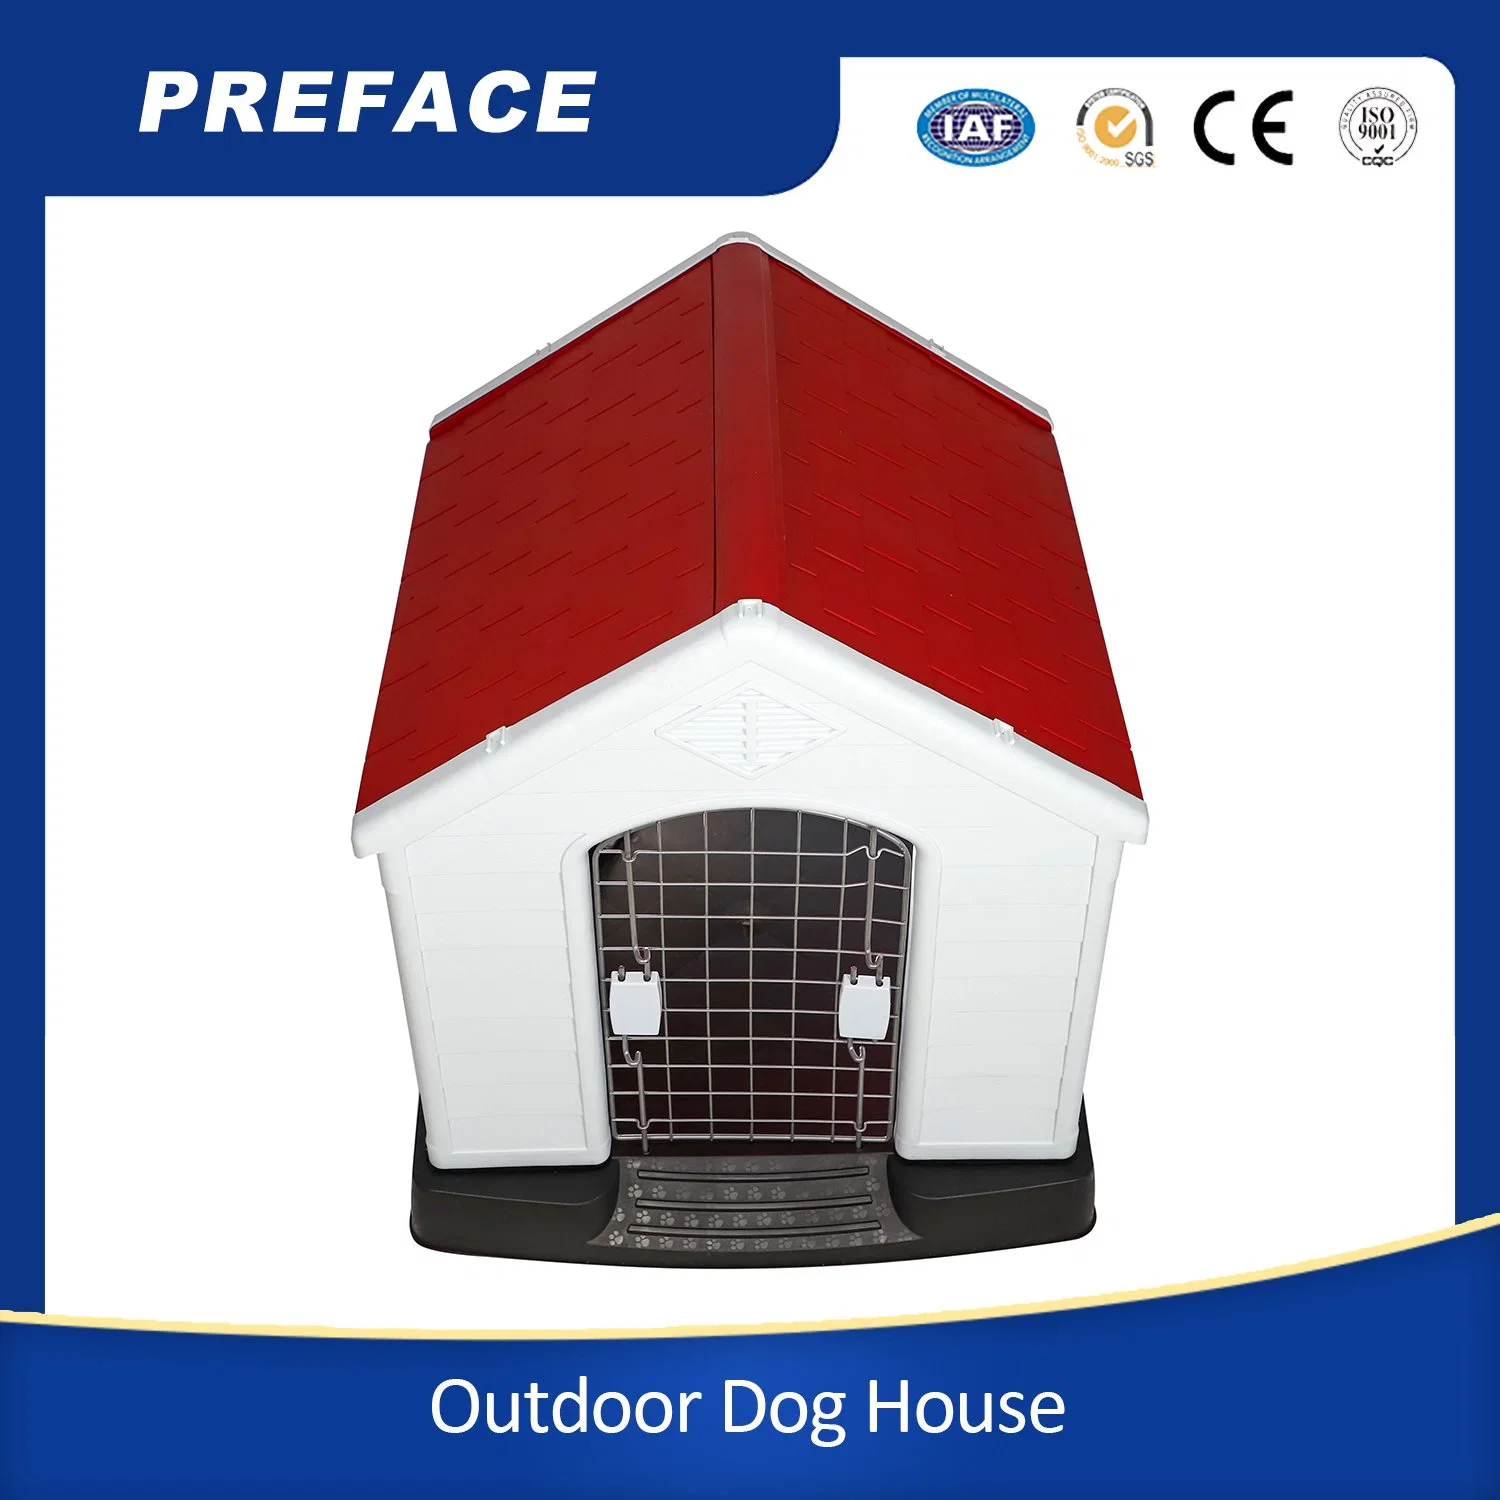 PET Dog Kennel impermeável e ventilado para todos os tipos de tempo Dog House Exterior plástico Pet Dog House